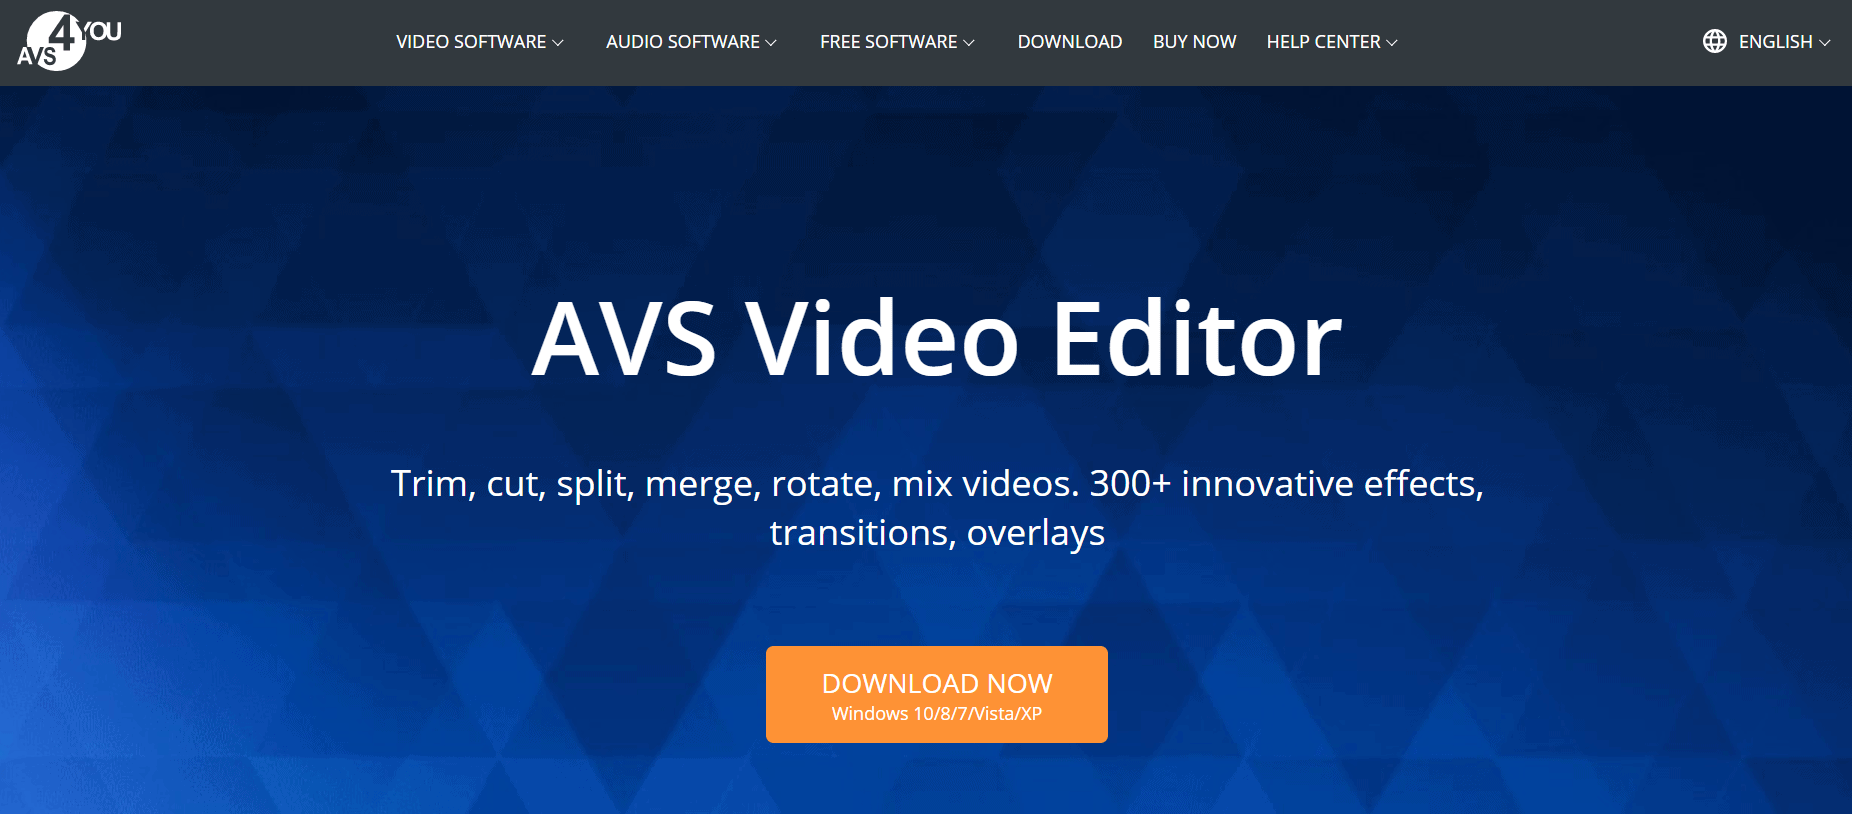 avs video editor